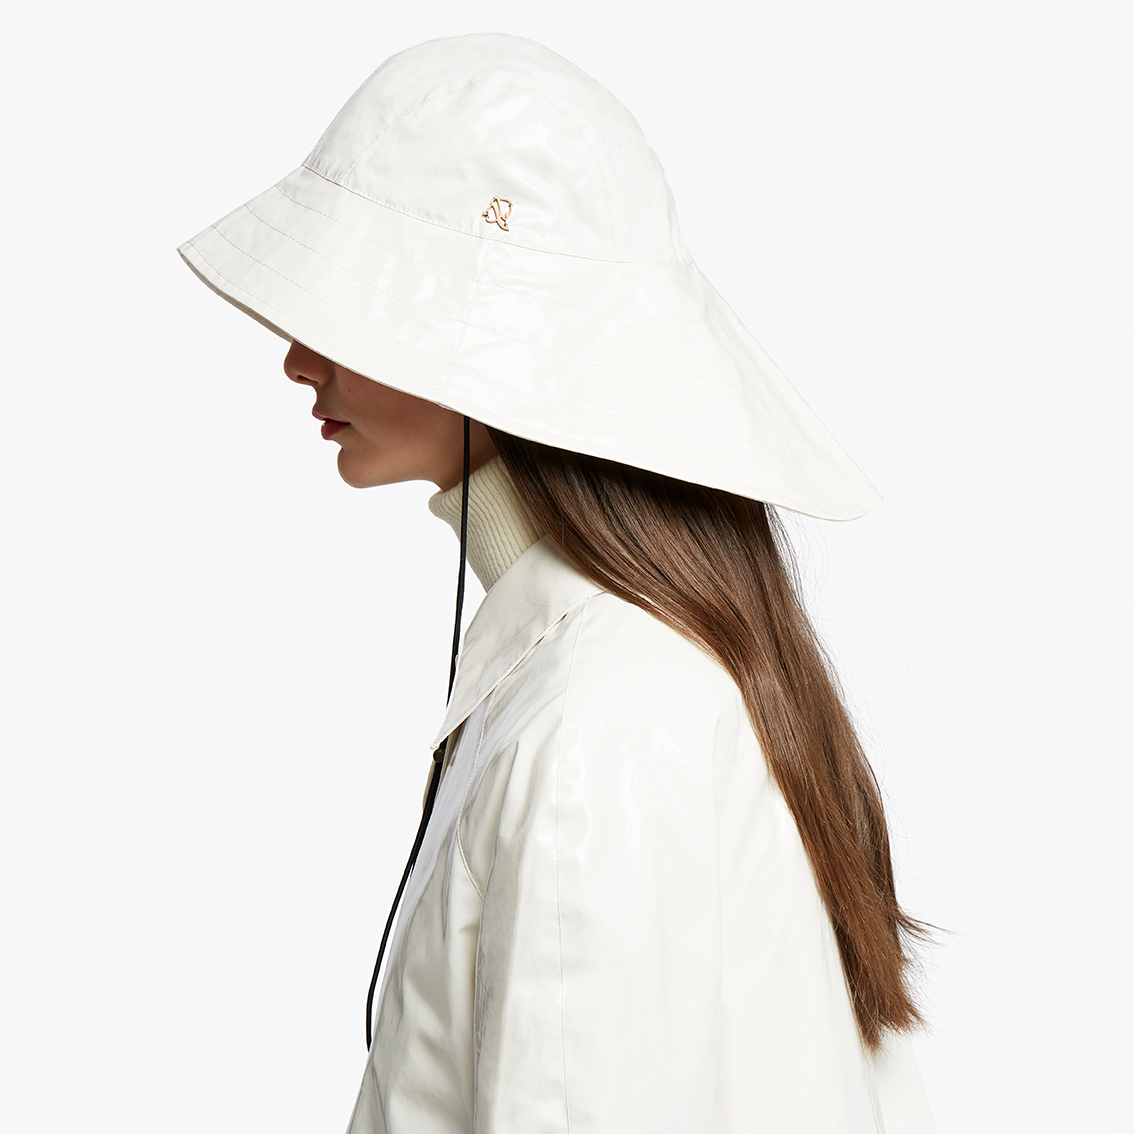 L’iconico cappello da pioggia, dalla caratteristica forma studiata per far scivolare via l’acqua, è la sintesi del manifesto di Sealup